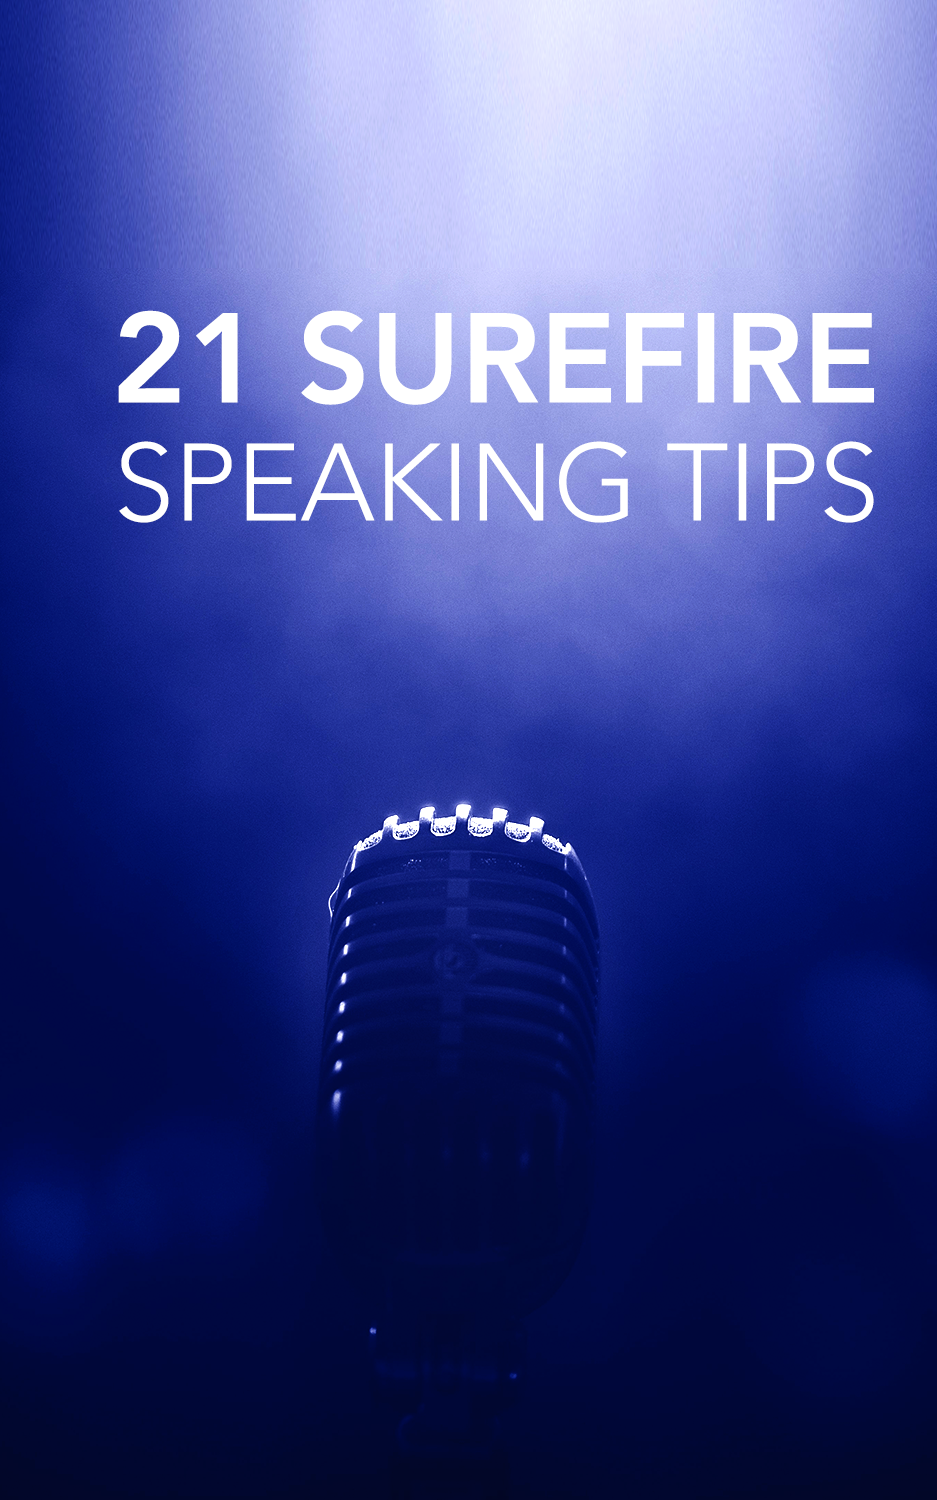 21 Surefire Speaking Tips